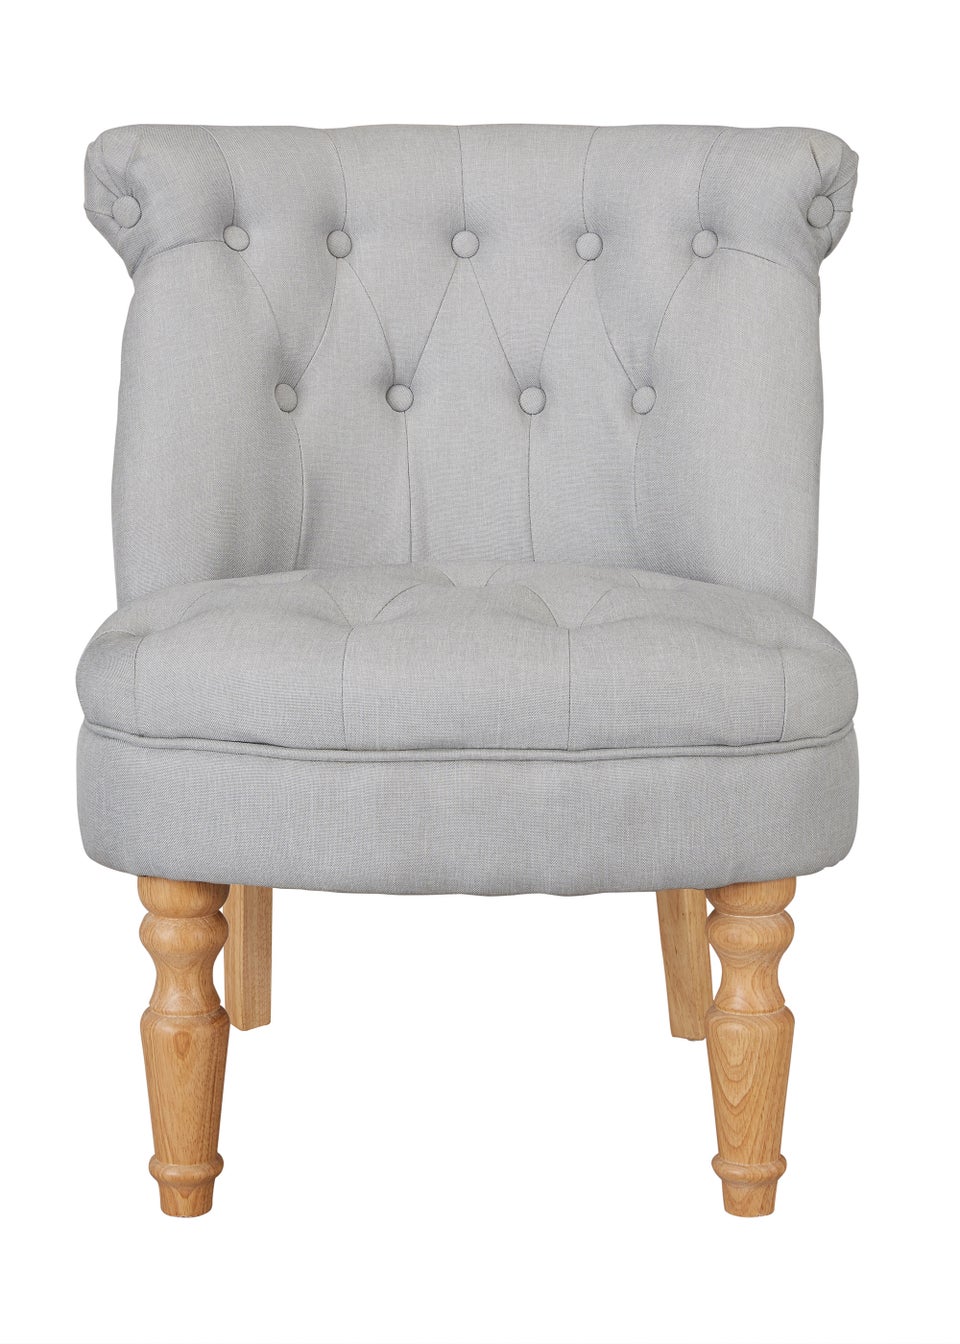 LPD Furniture Charlotte Chair Blue (690x640x770mm)